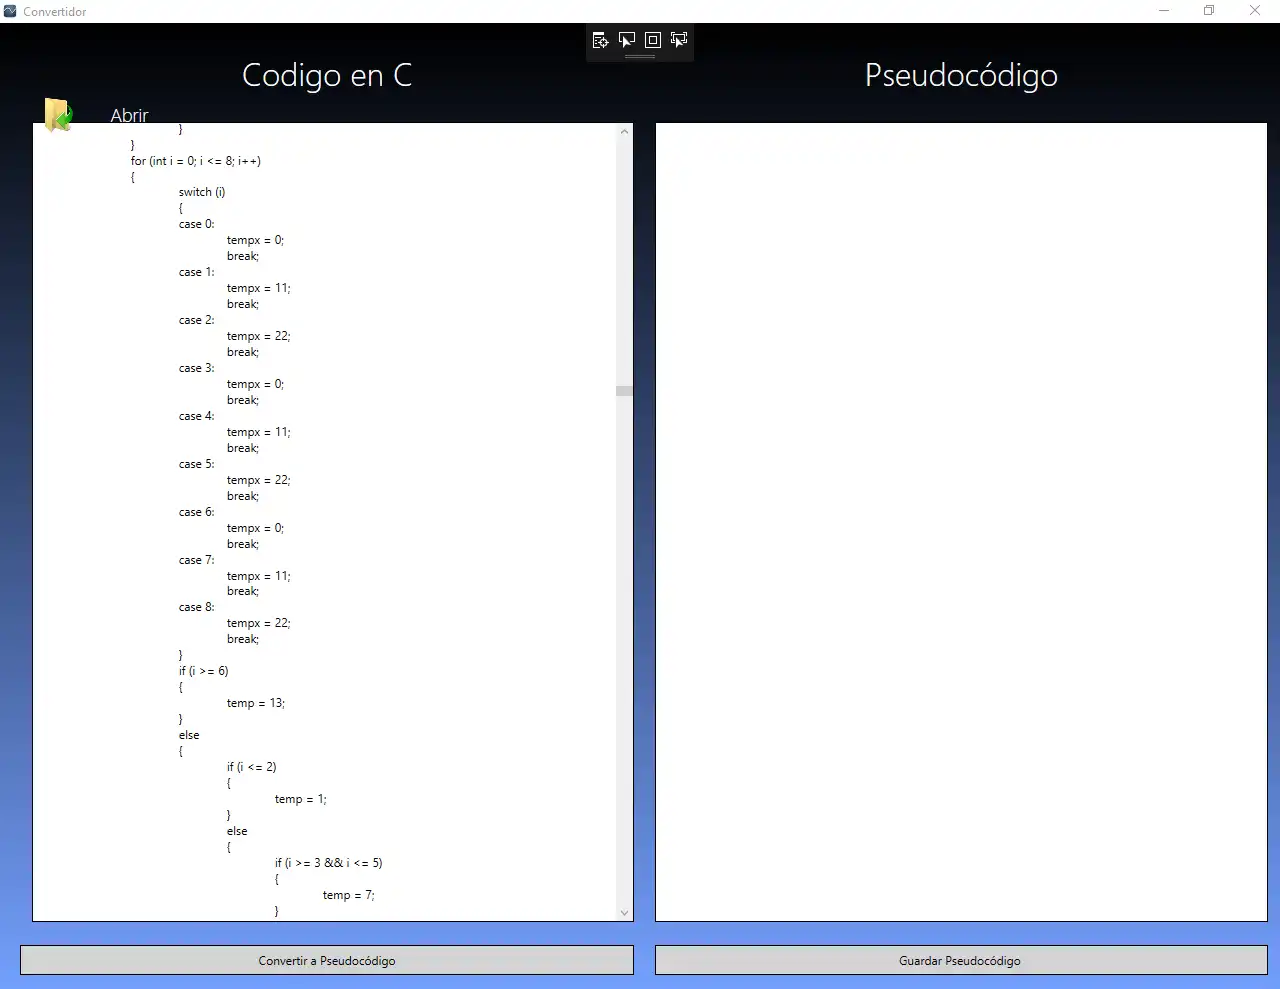 Download web tool or web app C a Pséudocodigo compatible con Pseint